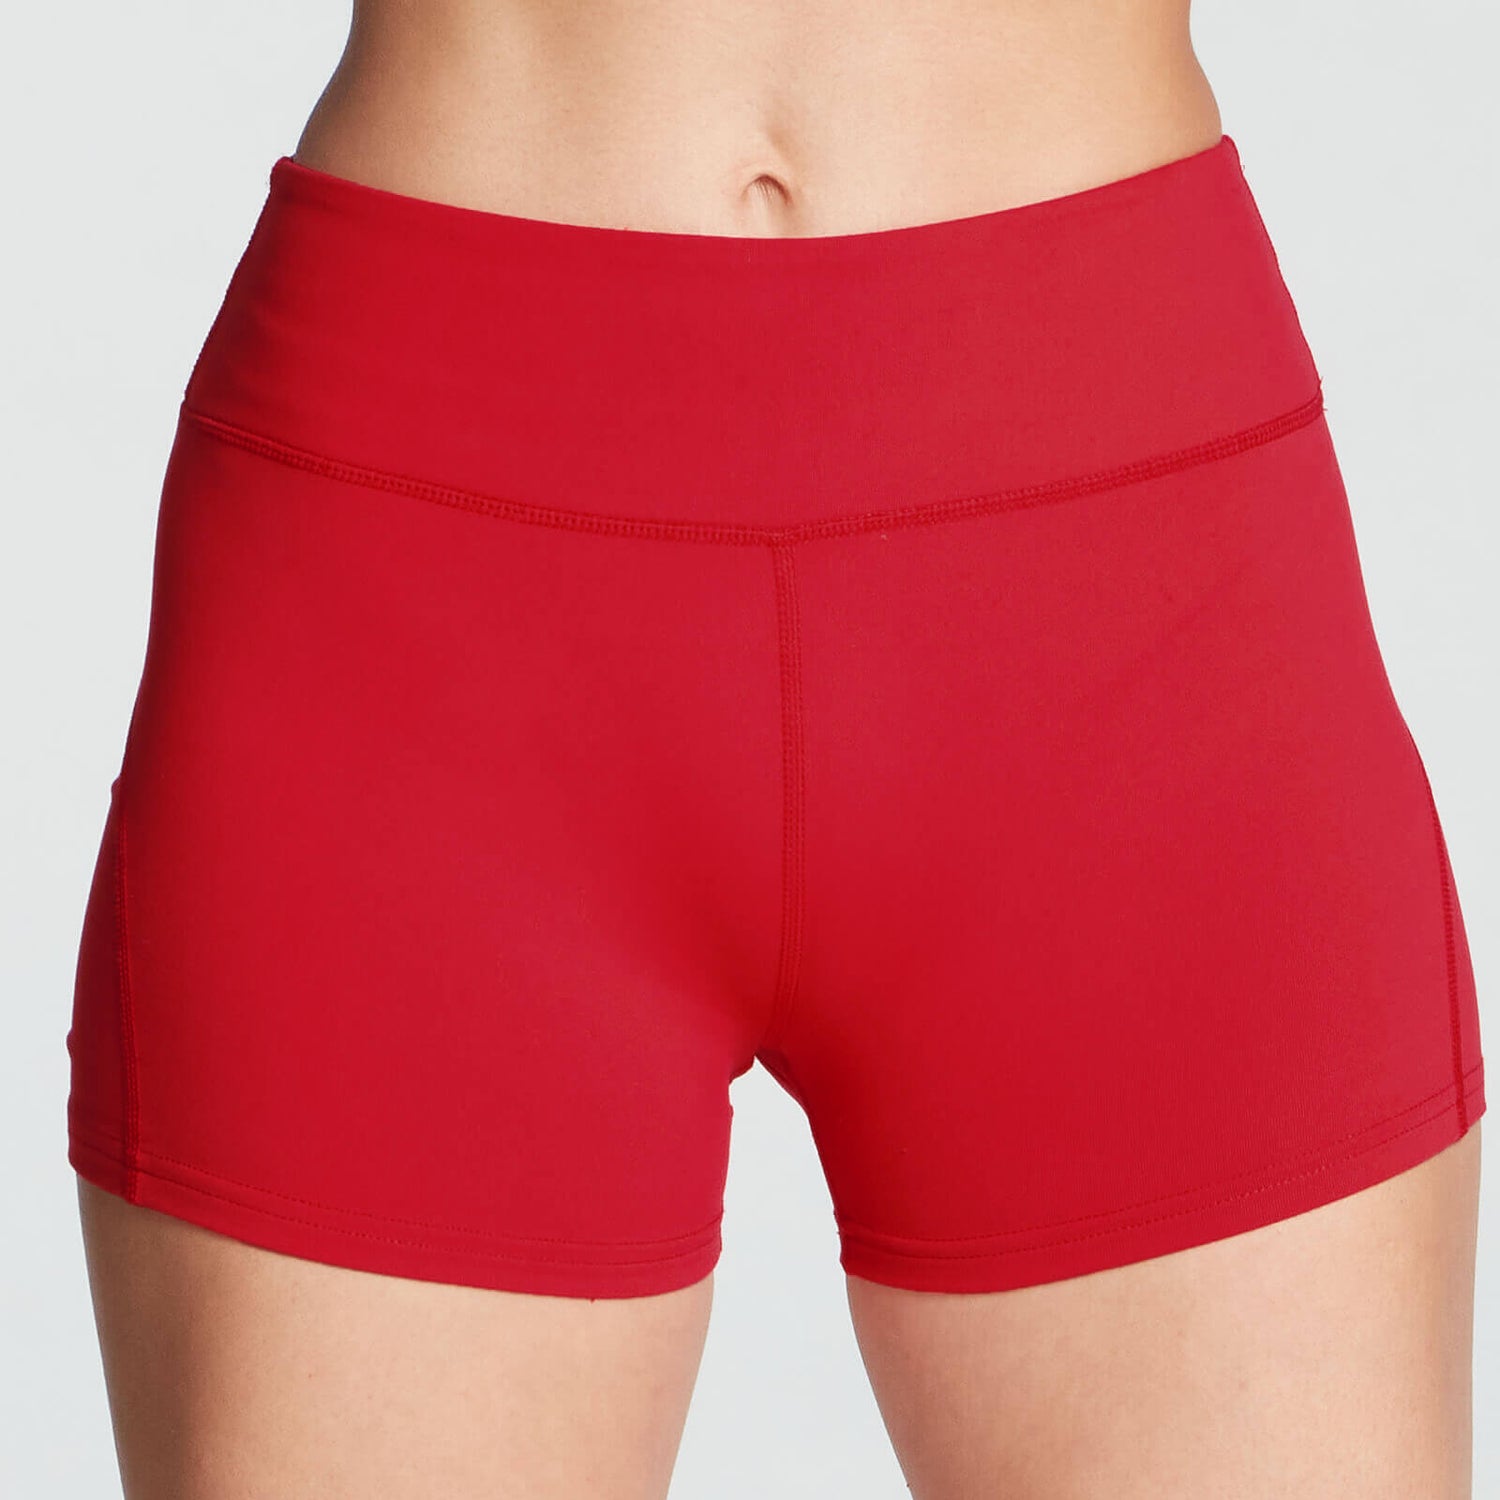 Σορτς Power Shorts - Κόκκινο - XL